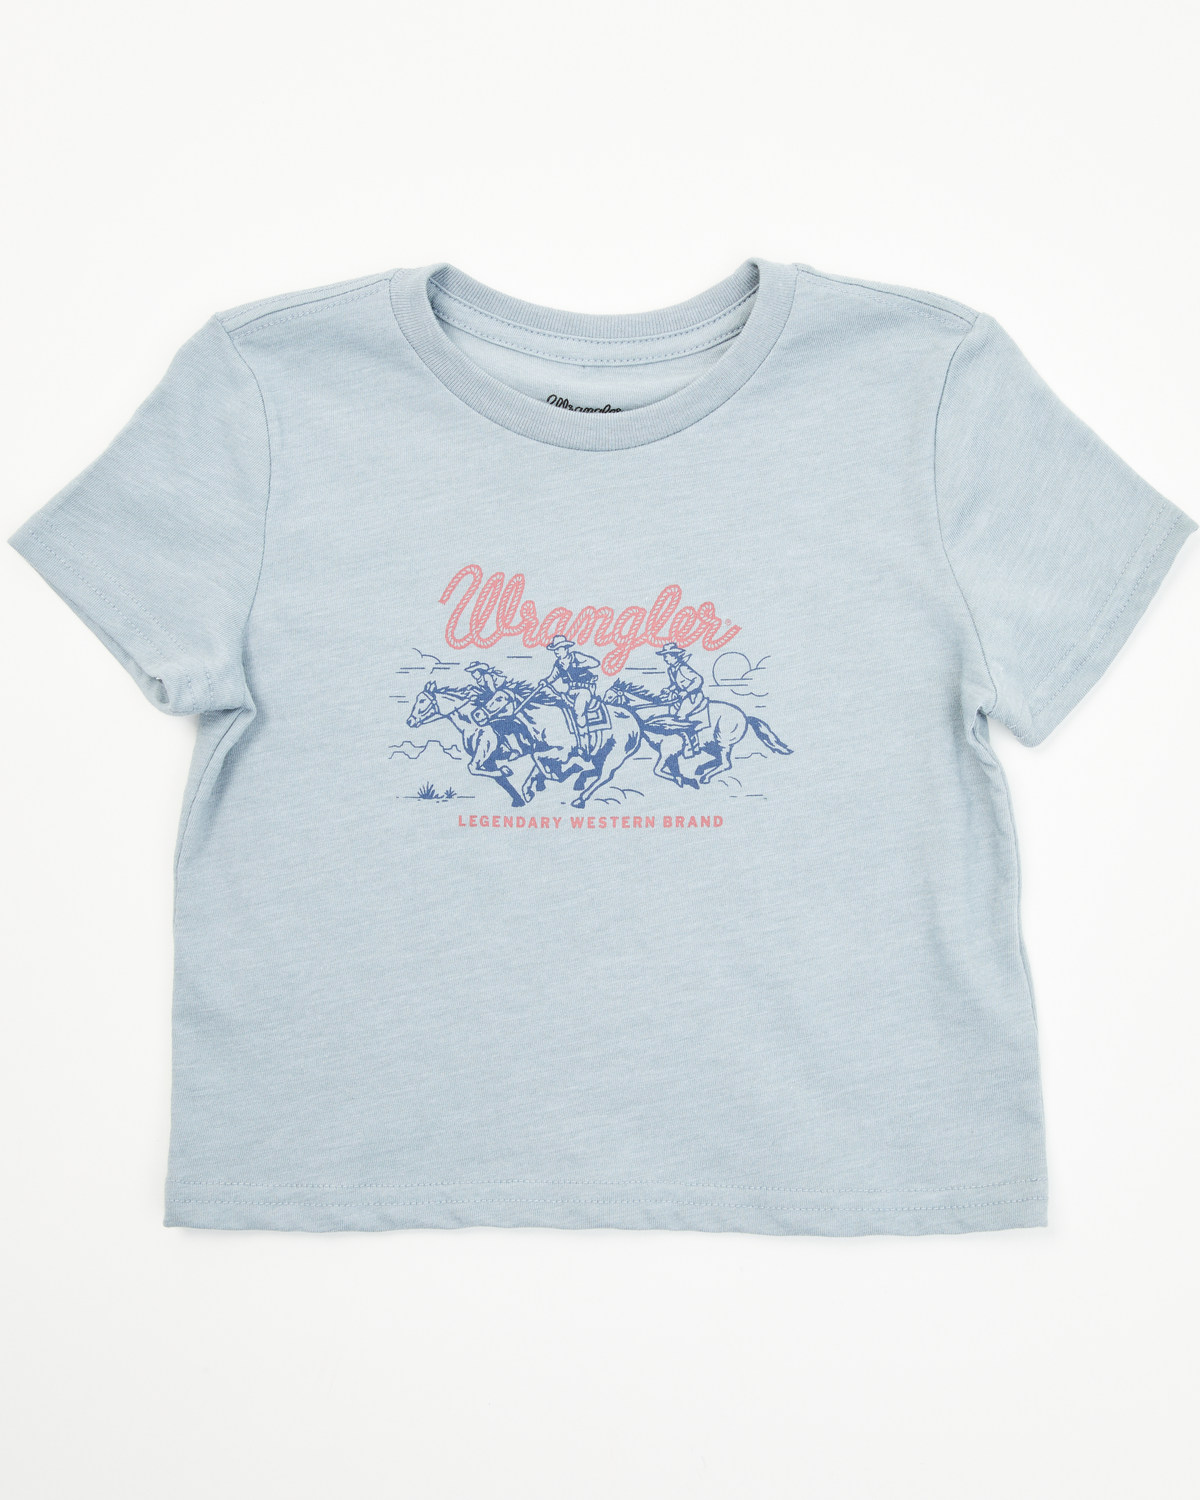 Wrangler Toddler Boys' Legendary Western Short Sleeve Graphic Print T-Shirt